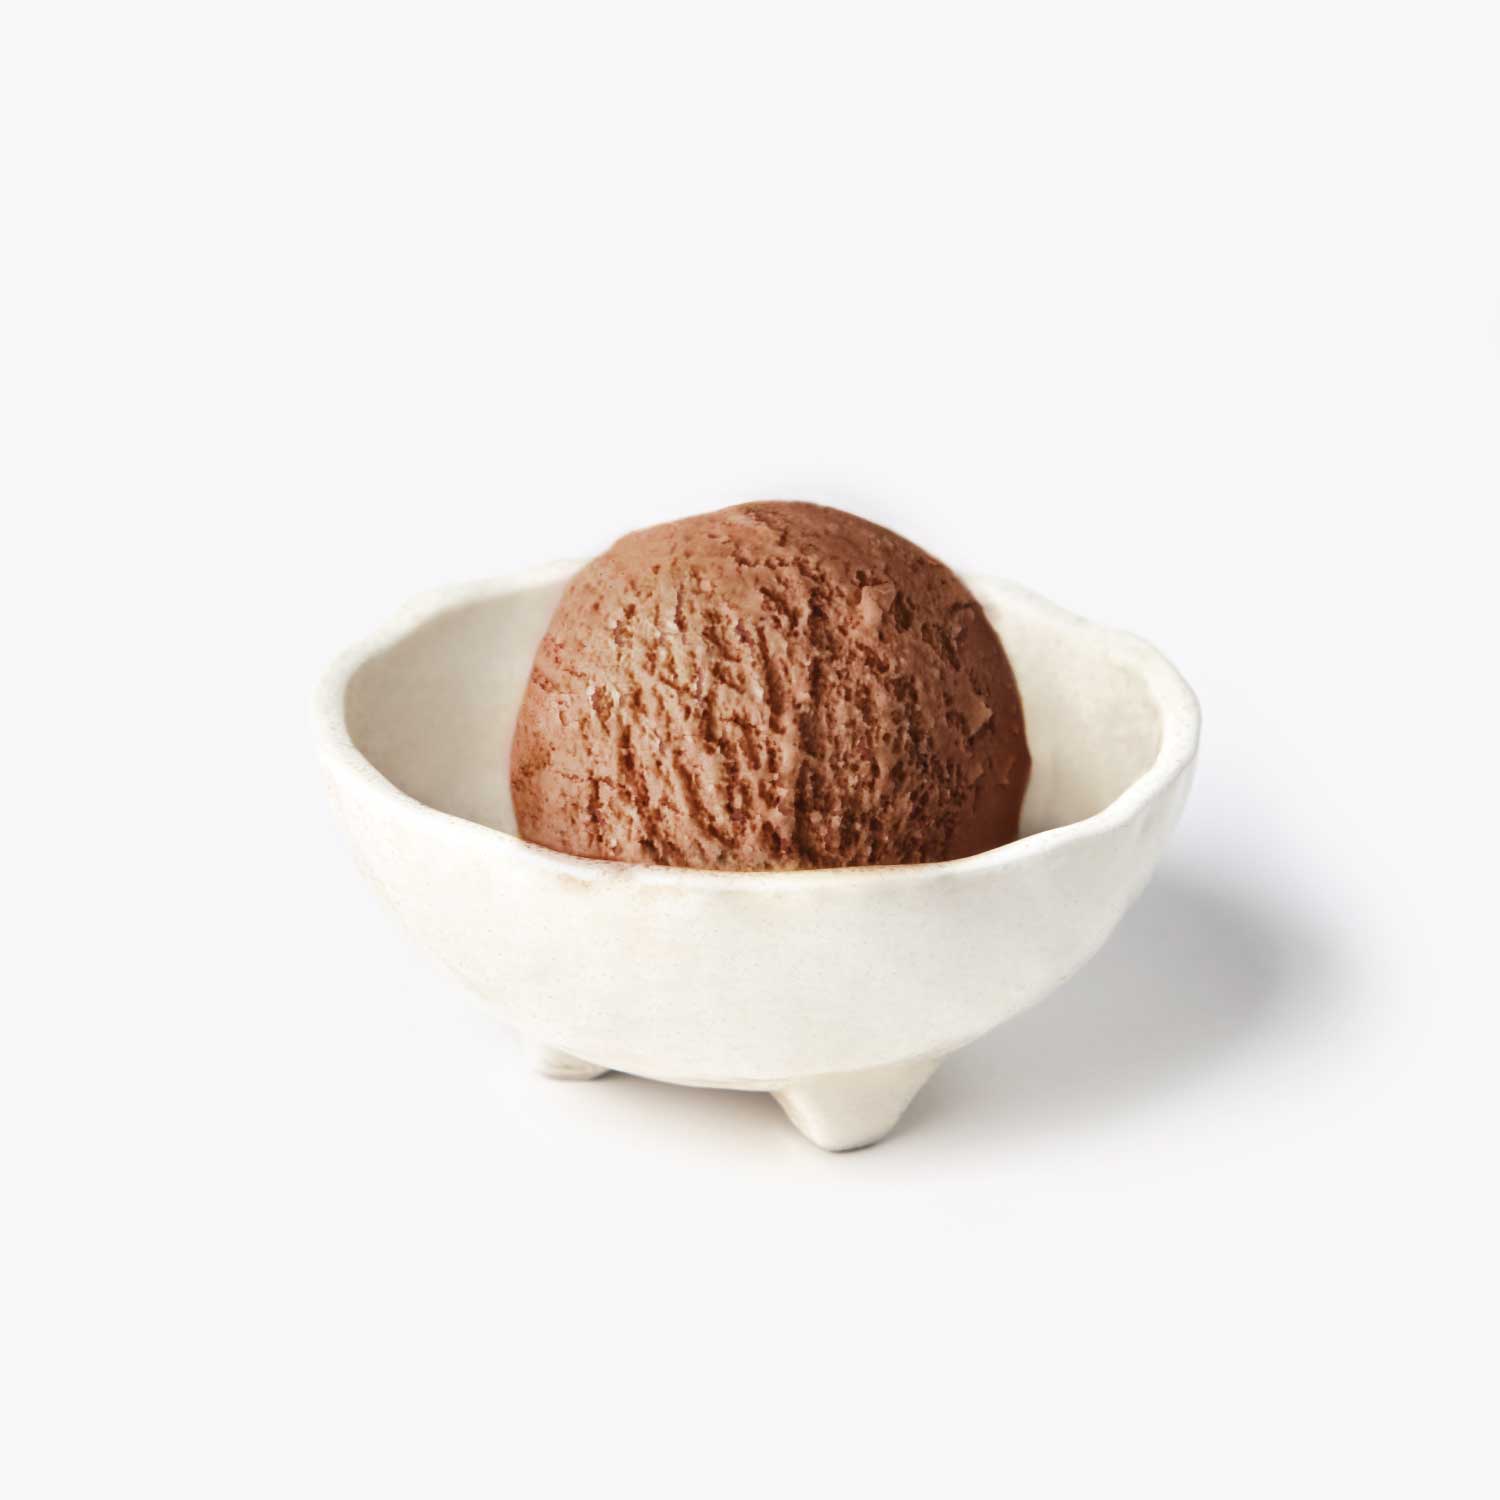 ไอศกรีม : SYNOVA ช็อกโกแลตไอศกรีม 4 L. (แพน)